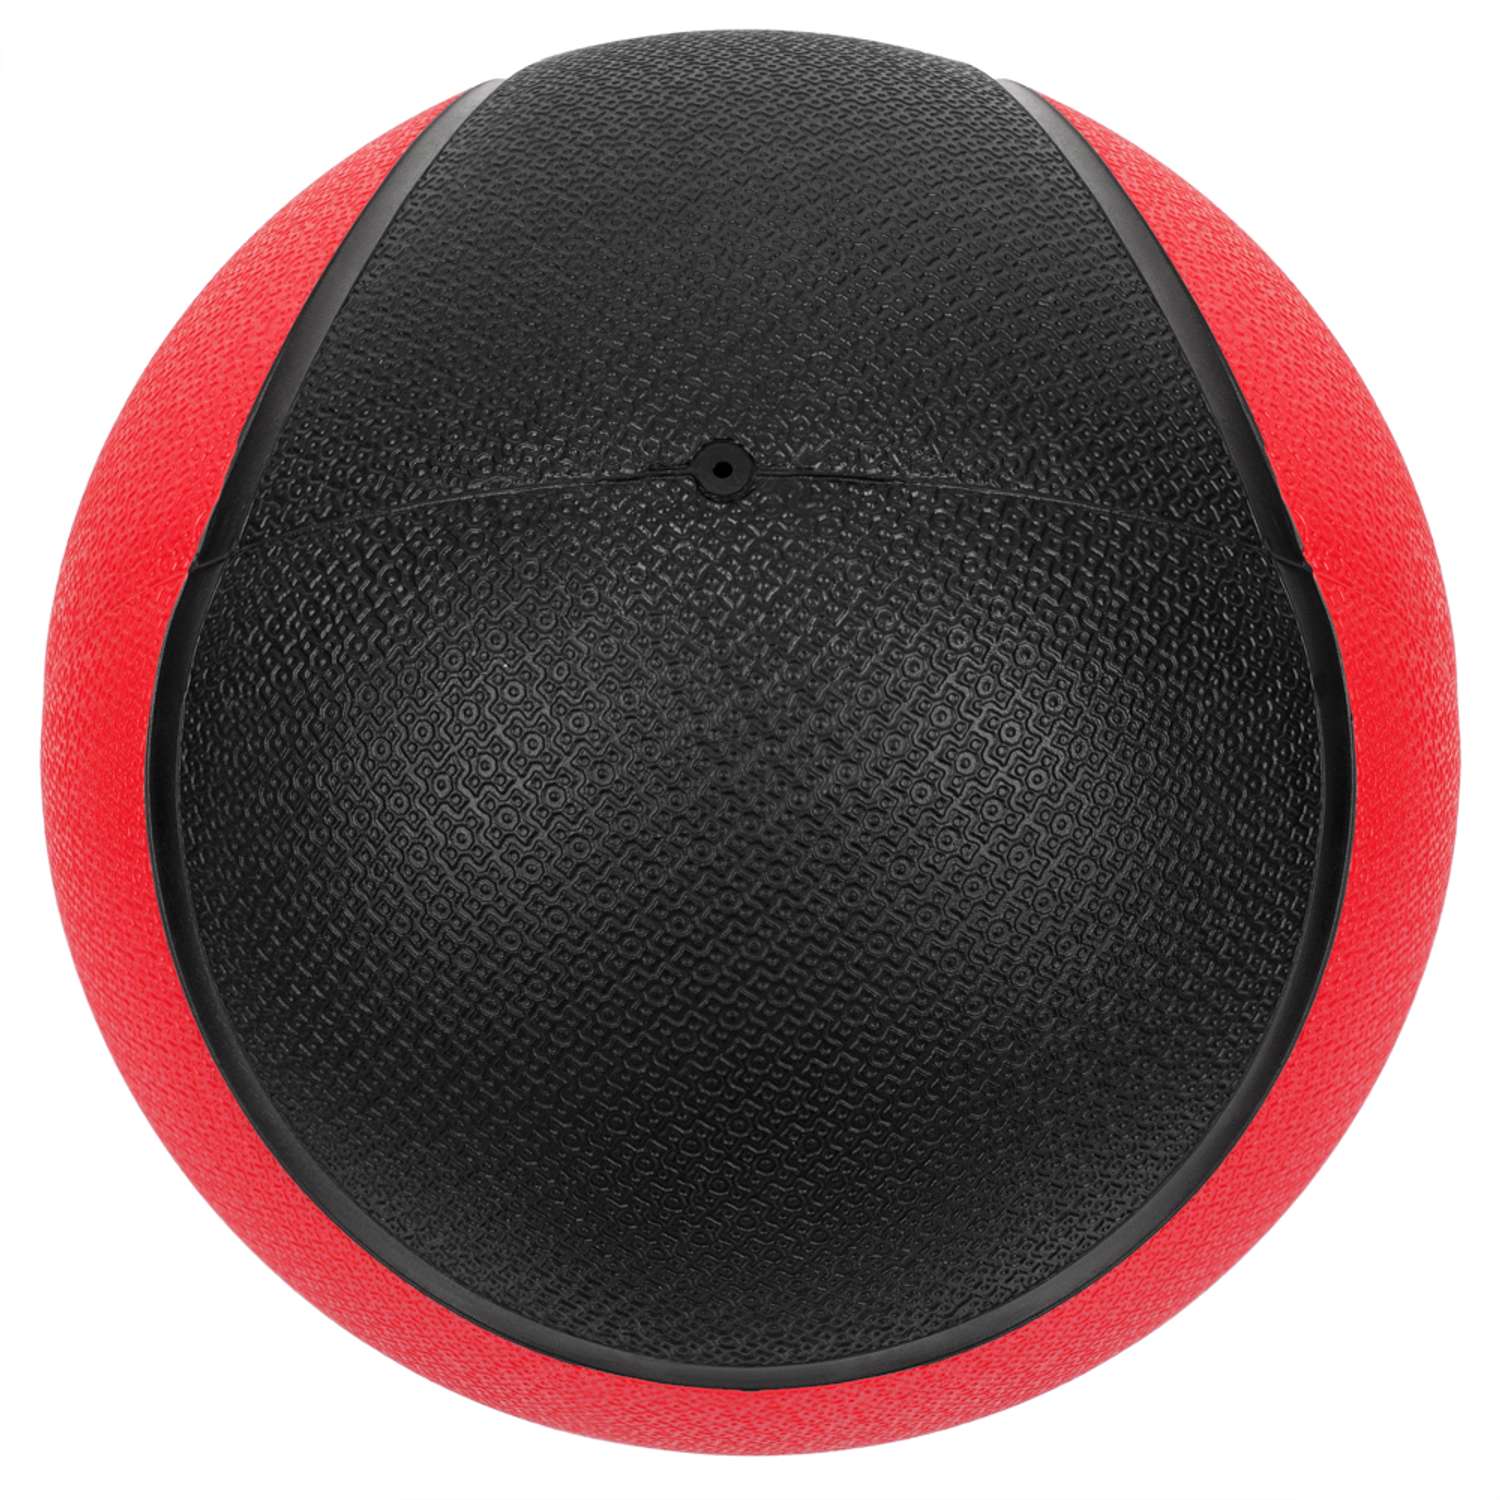 Медбол STRONG BODY медицинский мяч для фитнеса черно-красный 4 кг - фото 5